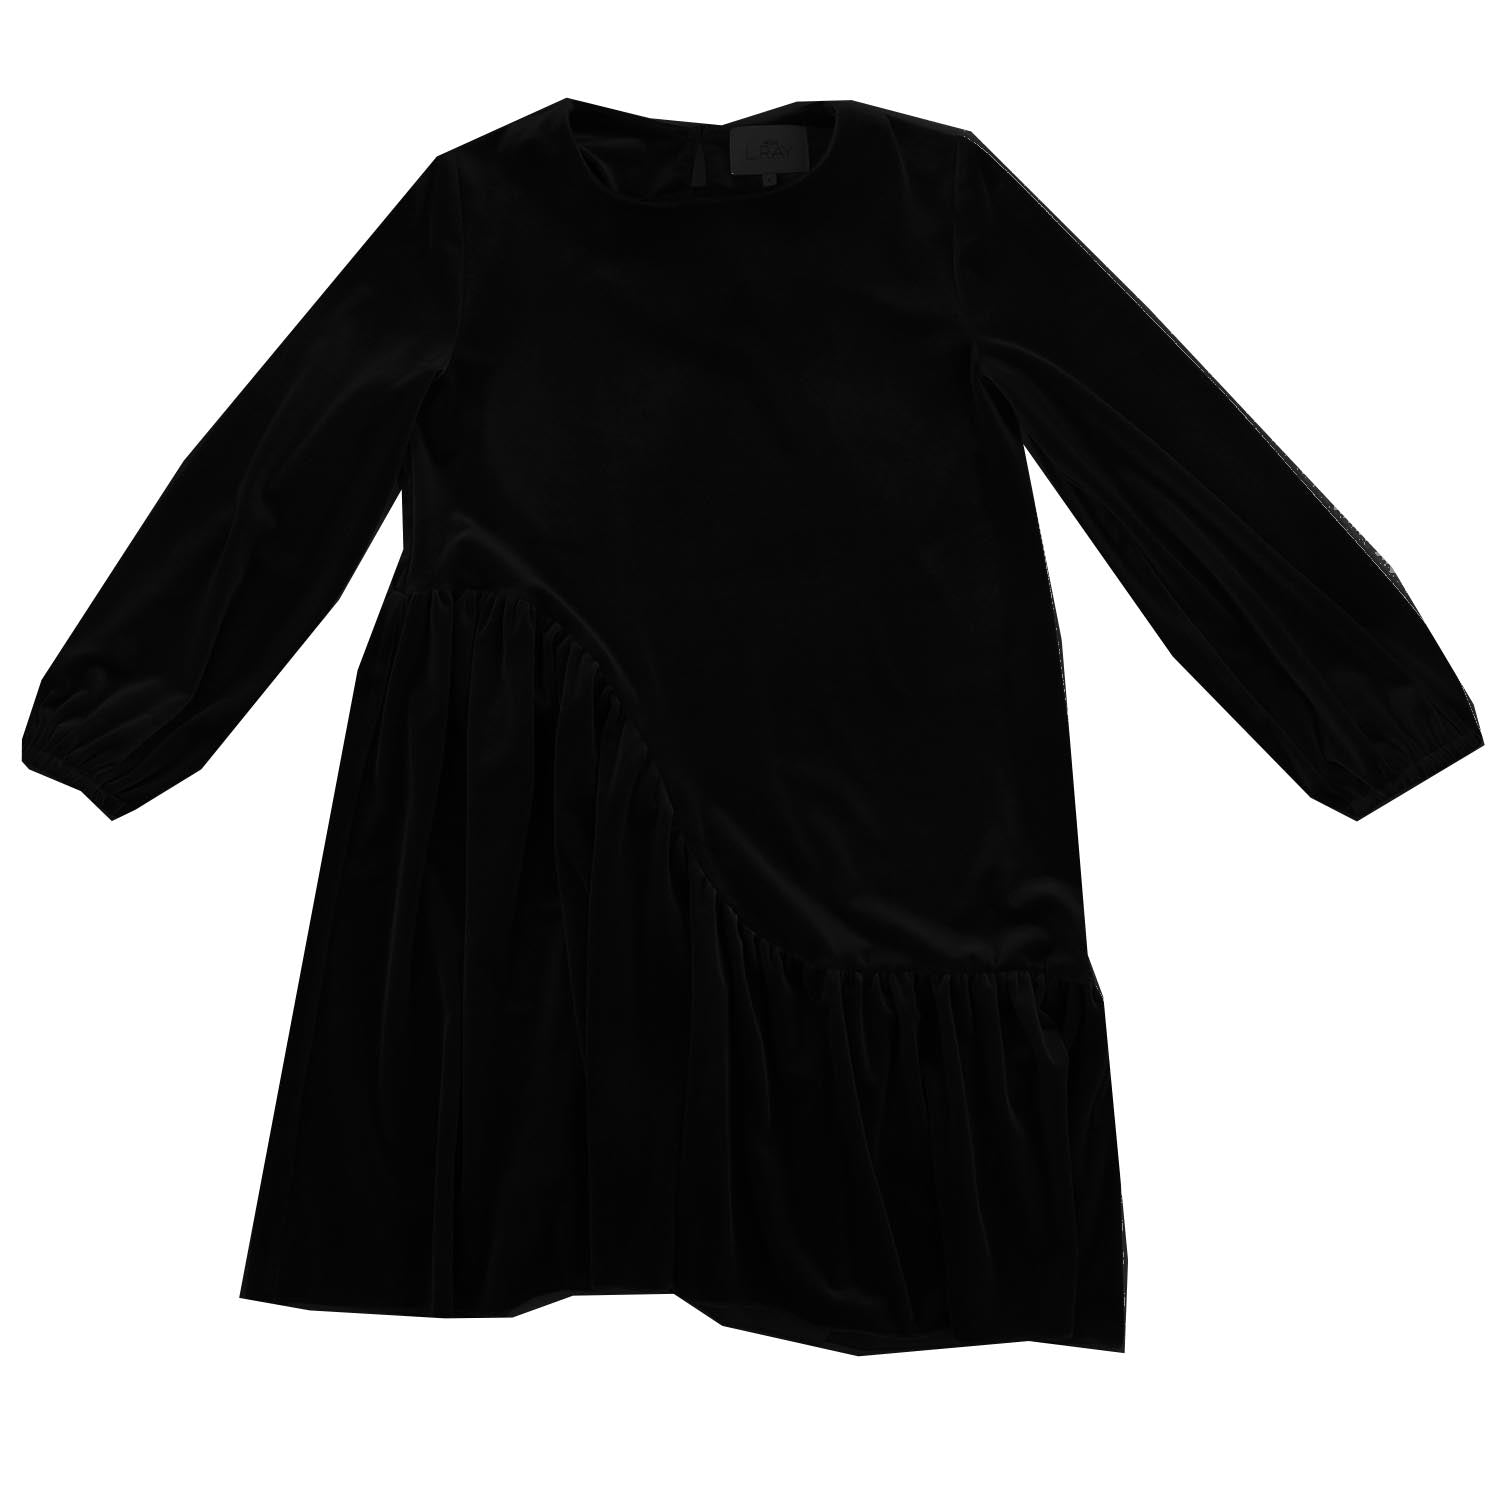 H&M+ Oversized T-shirt Dress - Dark gray - Ladies